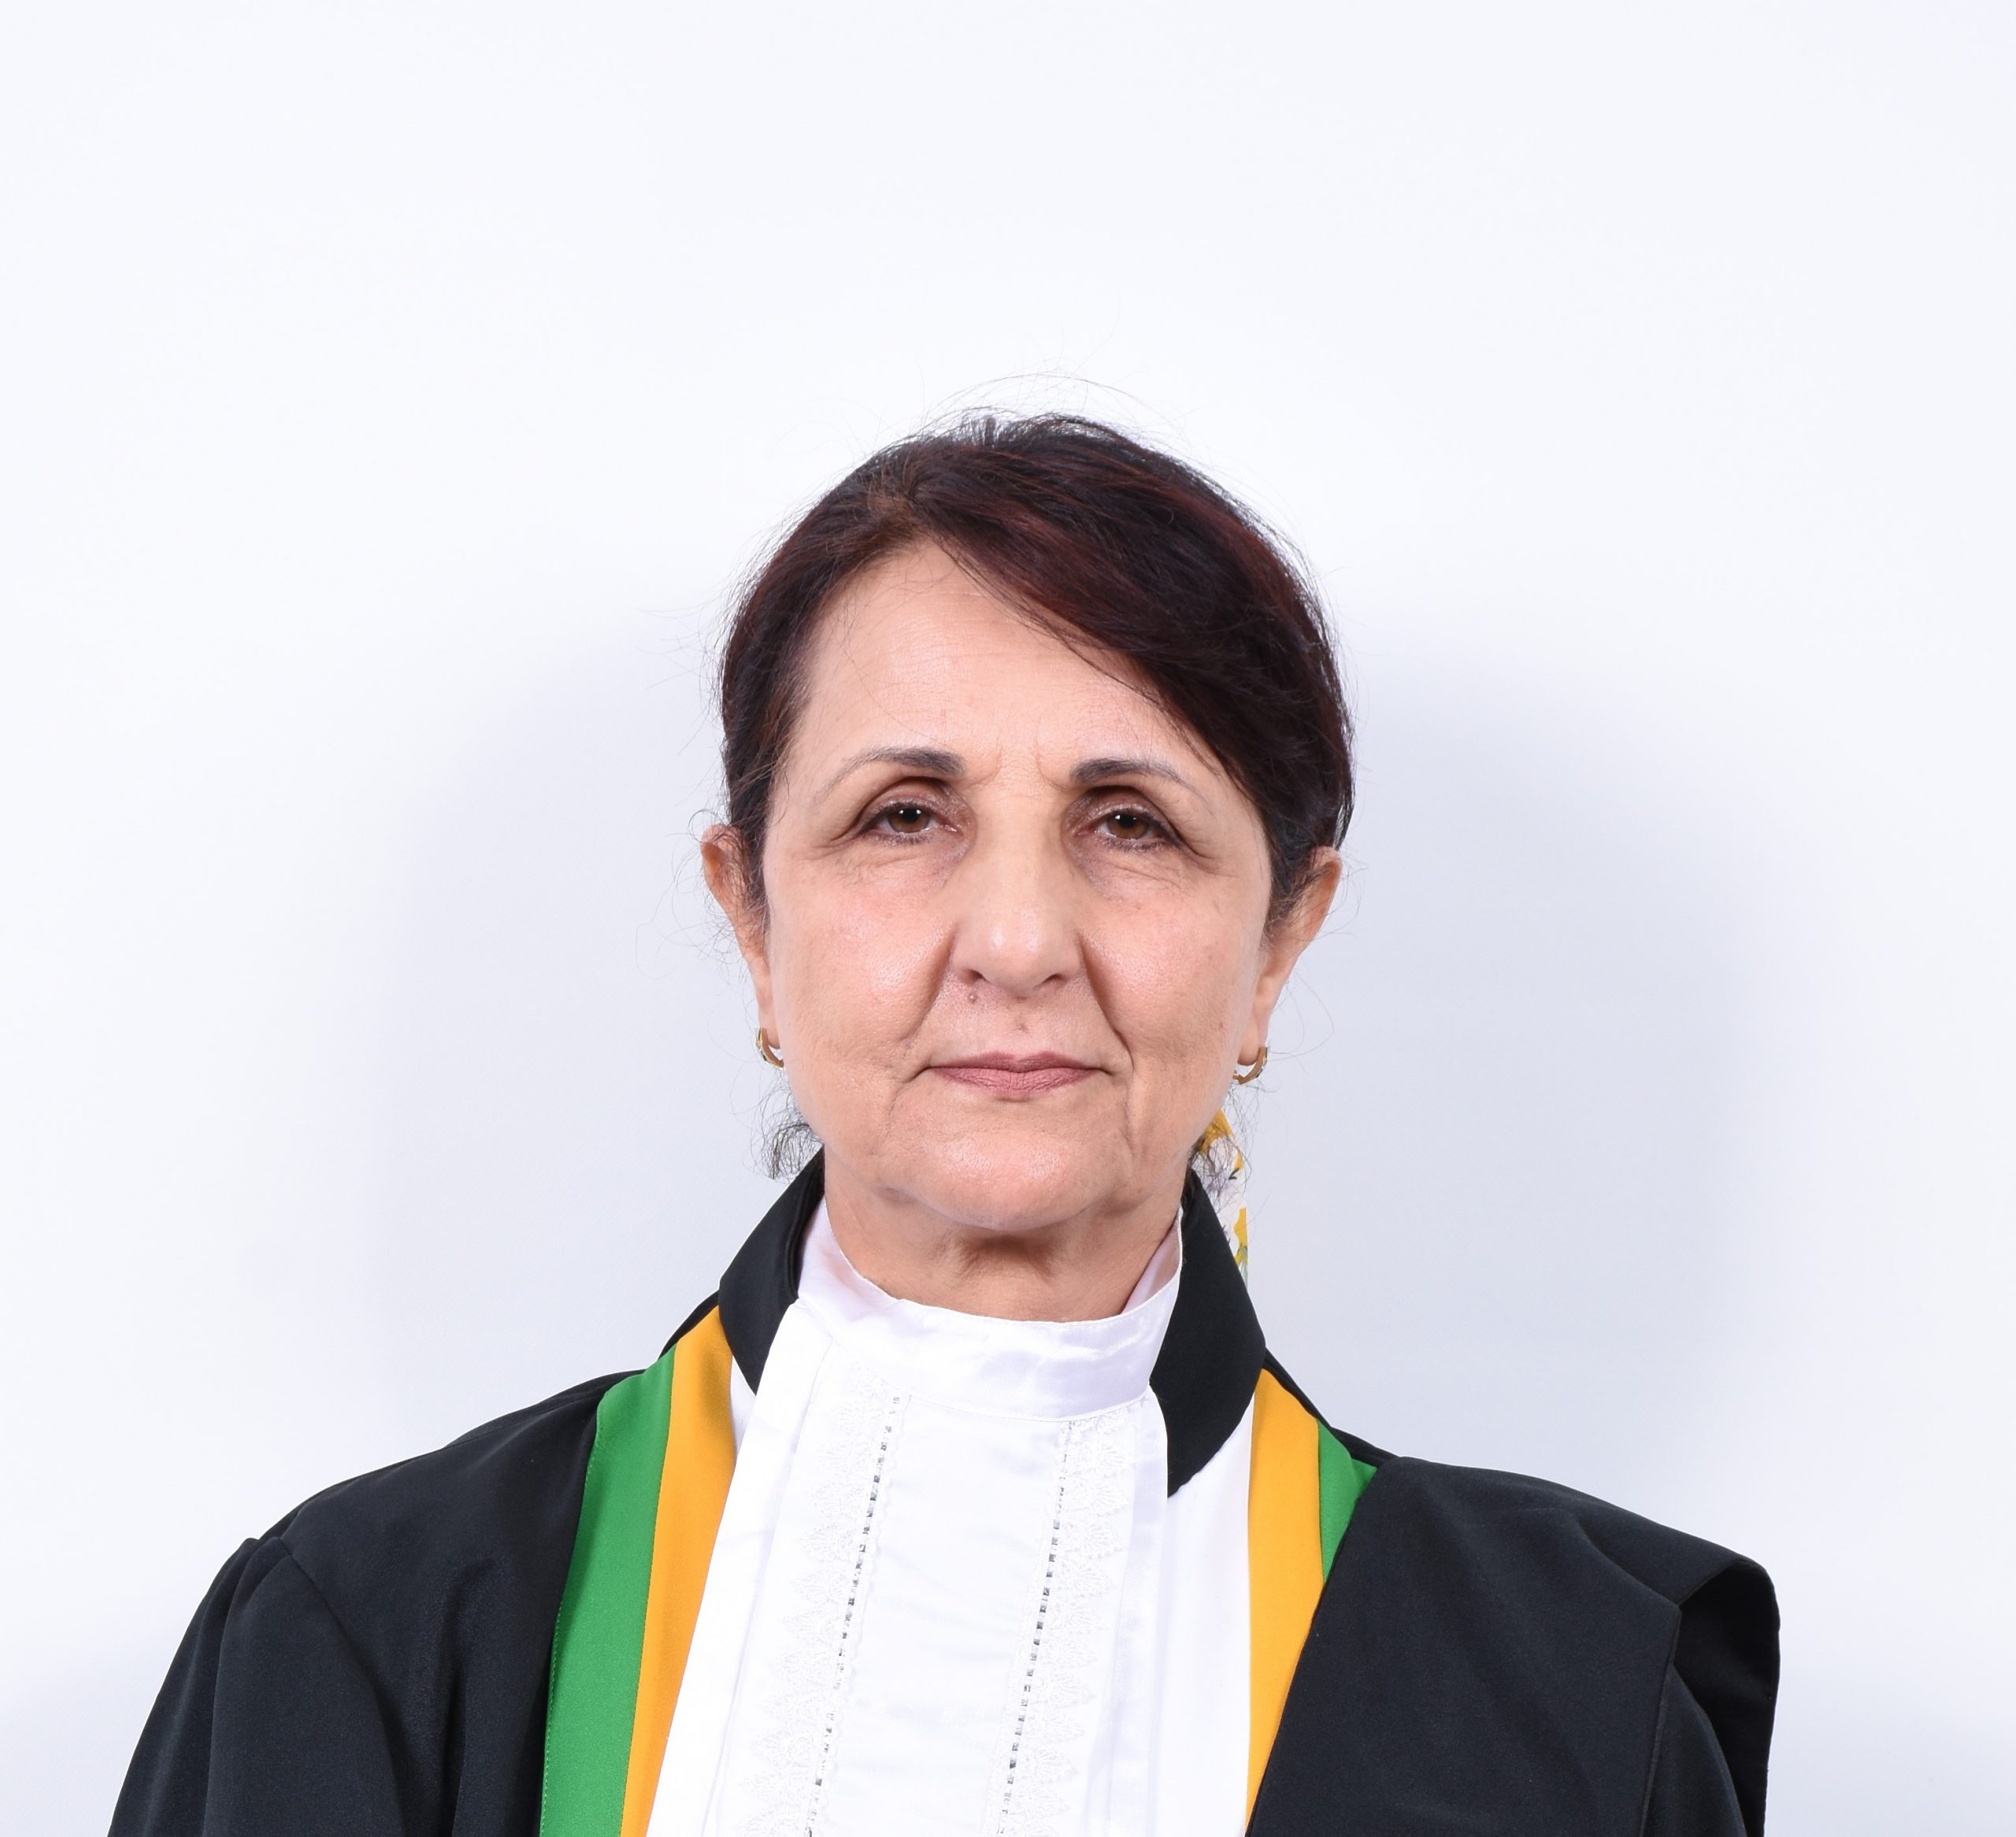 L’Honorable Juge Bensaoula Chafika - Algérie